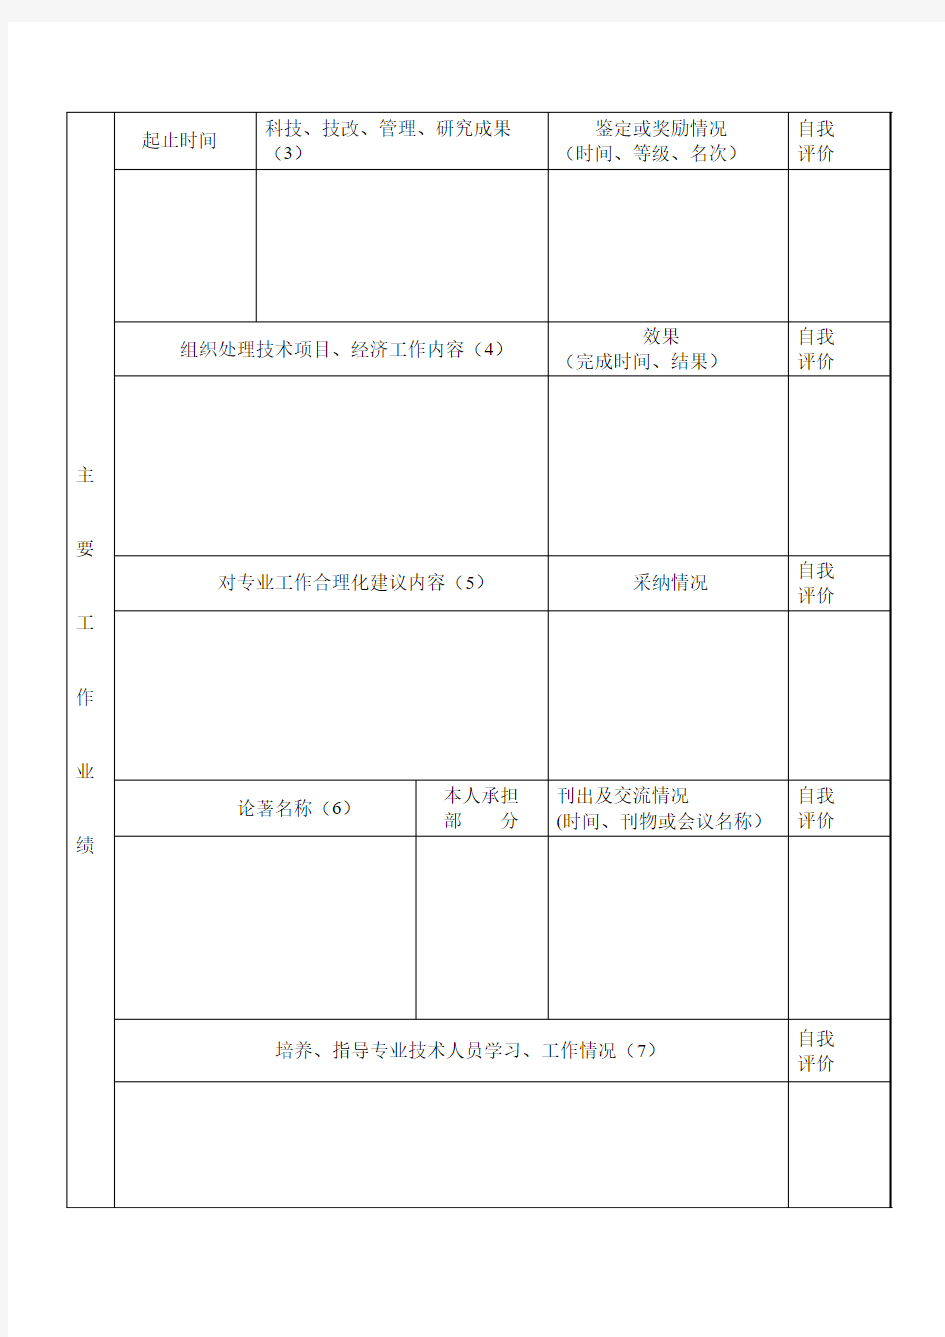 福建省工程技术经济专业人员考核登记表